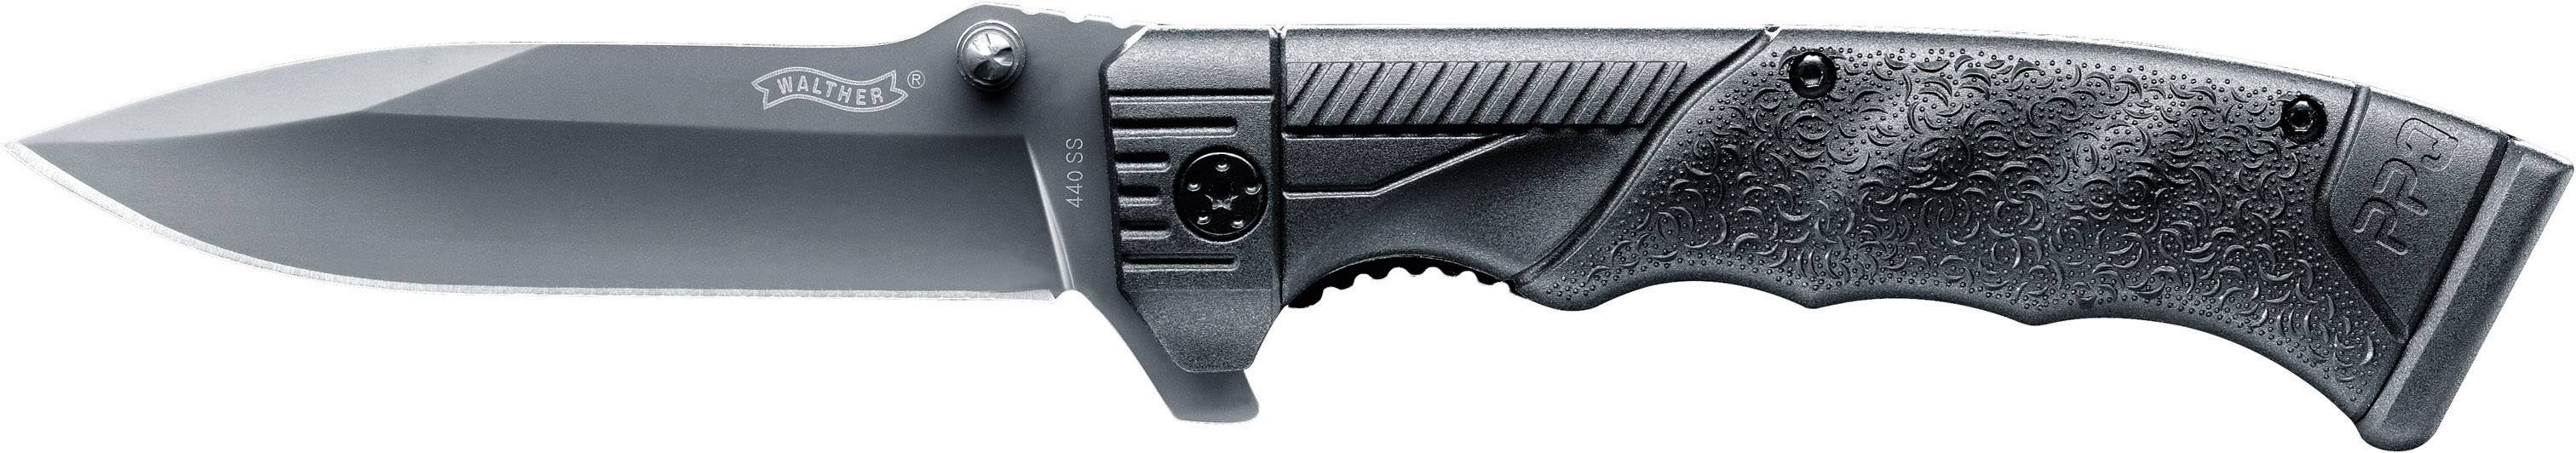 WALTHER Outdoor-Taschenmesser PPQ Knife Multitool, Taschenmesser, 5.0746